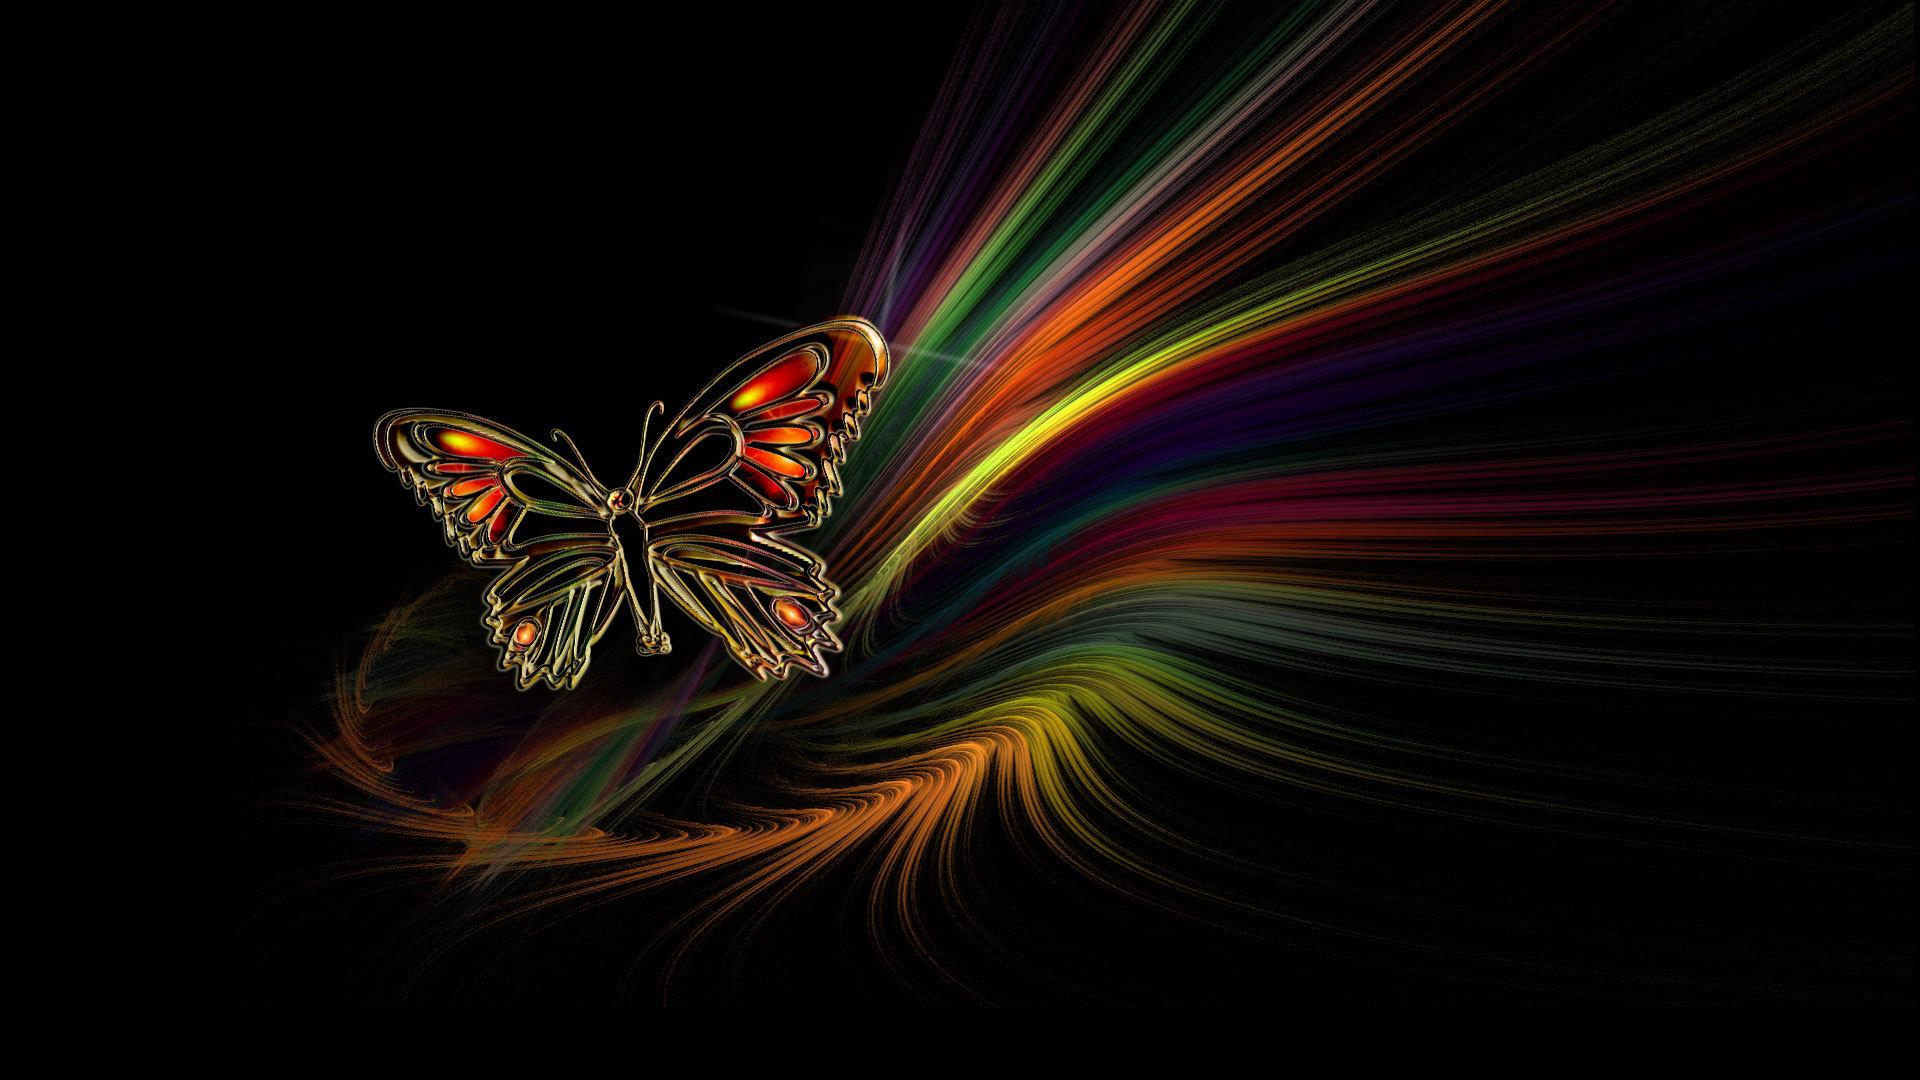 pc wallpaper hd 1080p butterfly